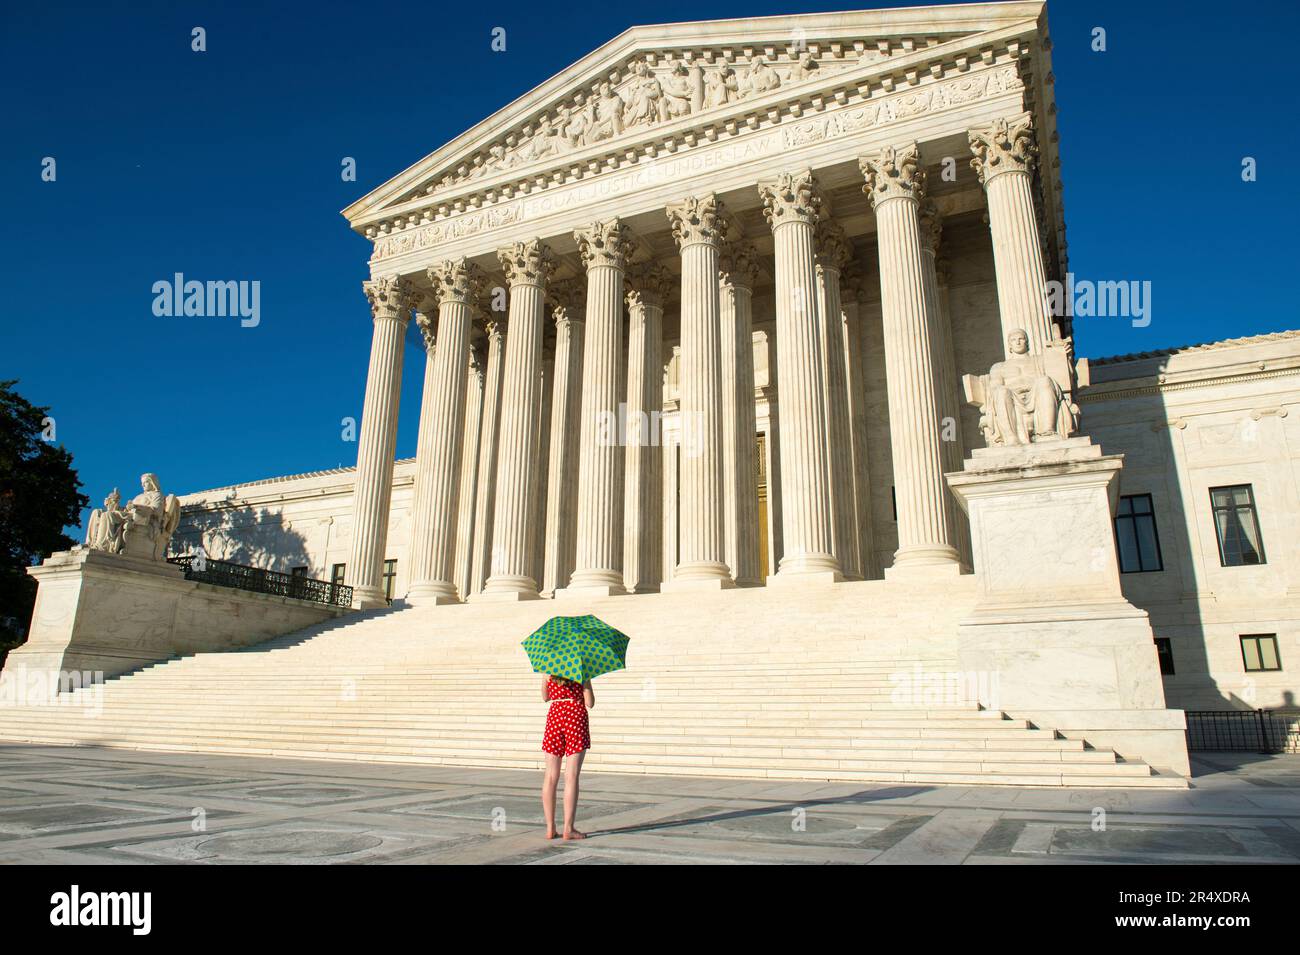 Femme avec parapluie dans des couleurs vives vues sur les États-Unis Cour suprême à Washington, DC, Etats-Unis; Washington, District de Columbia, États-Unis d'Amérique Banque D'Images